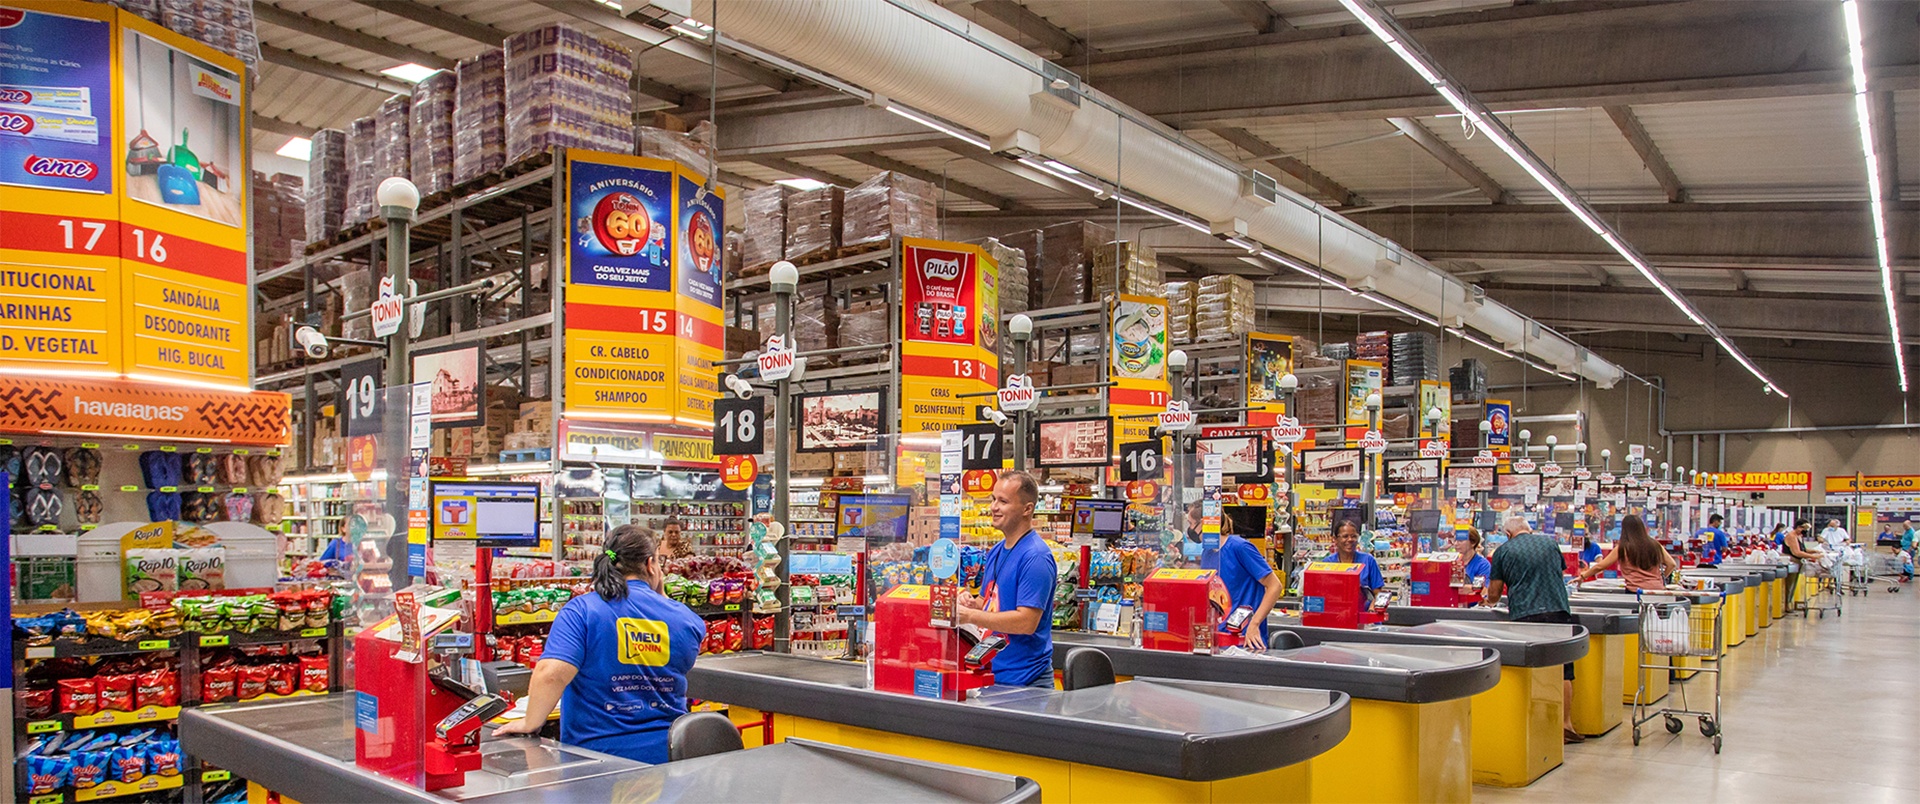 Supermercado com unidade em São Carlos lança novo aplicativo